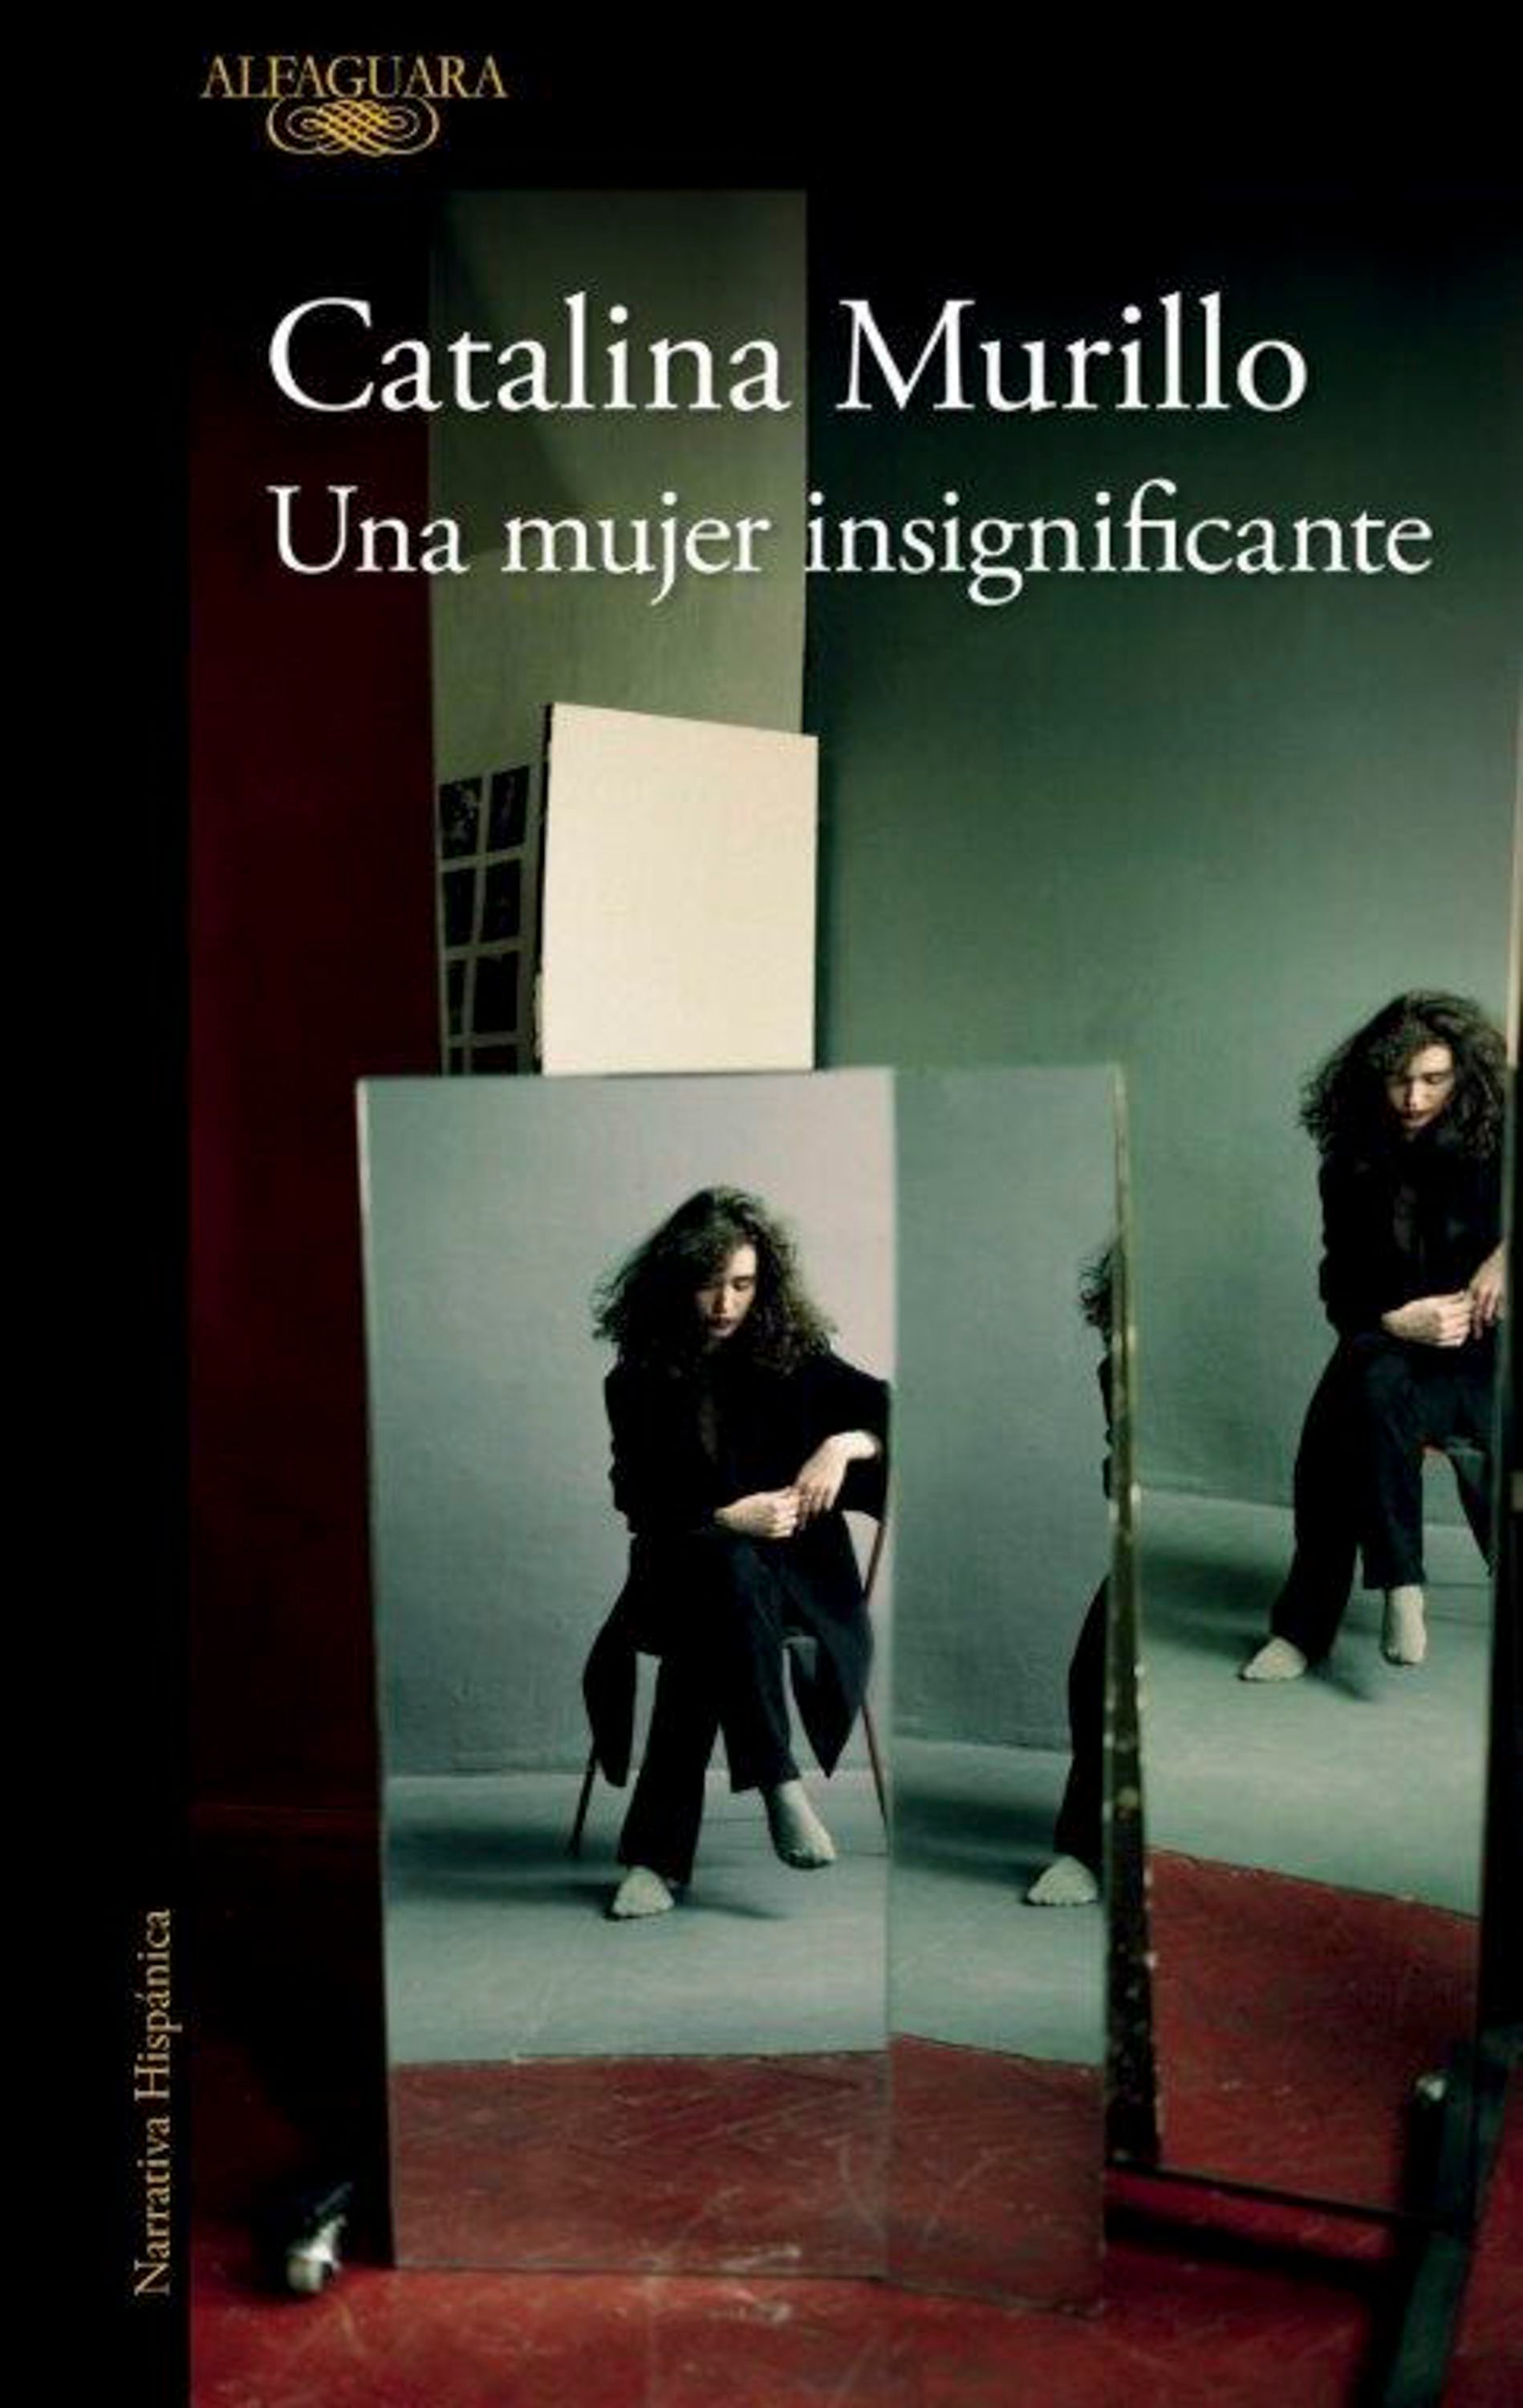 'Una mujer insignificante', de Catalina Murillo, es una novela de 160 páginas publicada por la editorial Alfaguara.